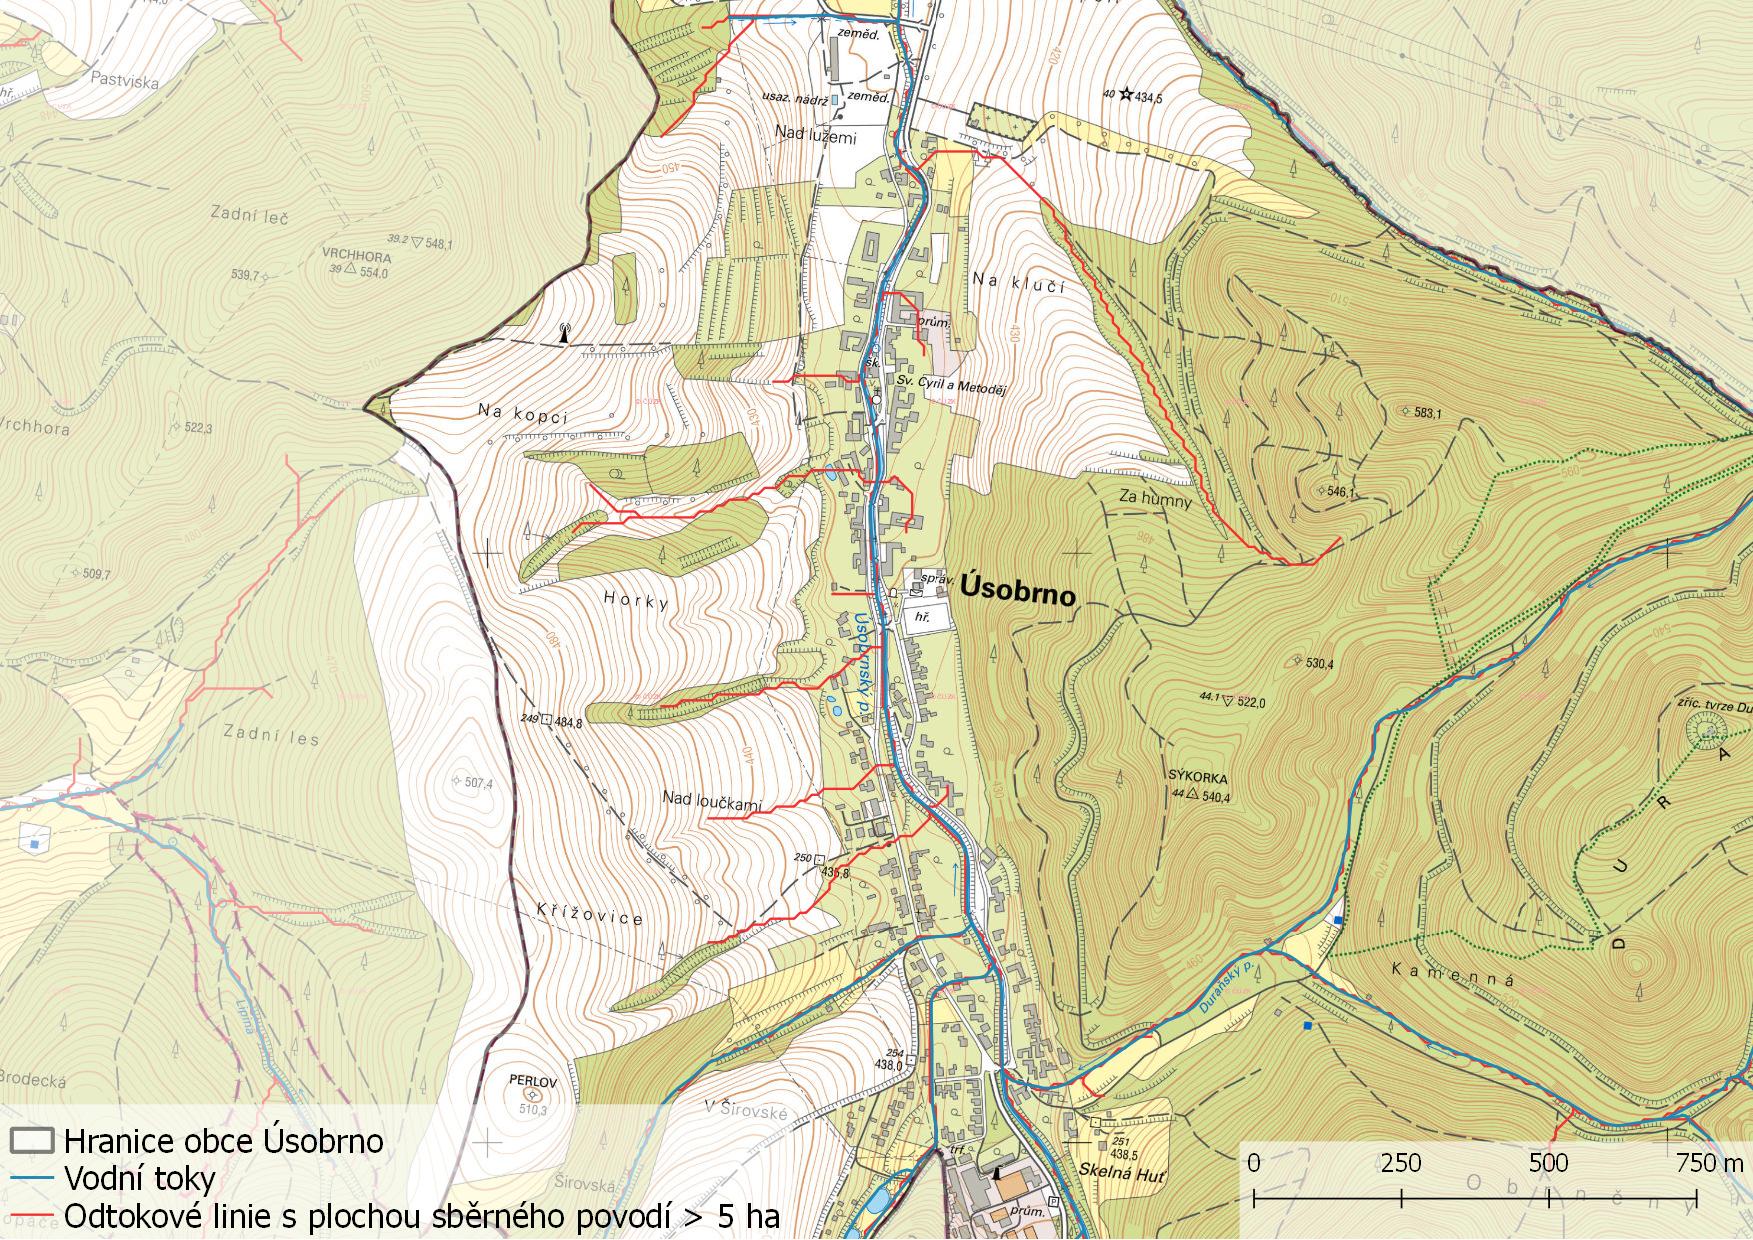 Odtokové linie s plochou sběrného povodí > 5 ha na území obce Úsobrno